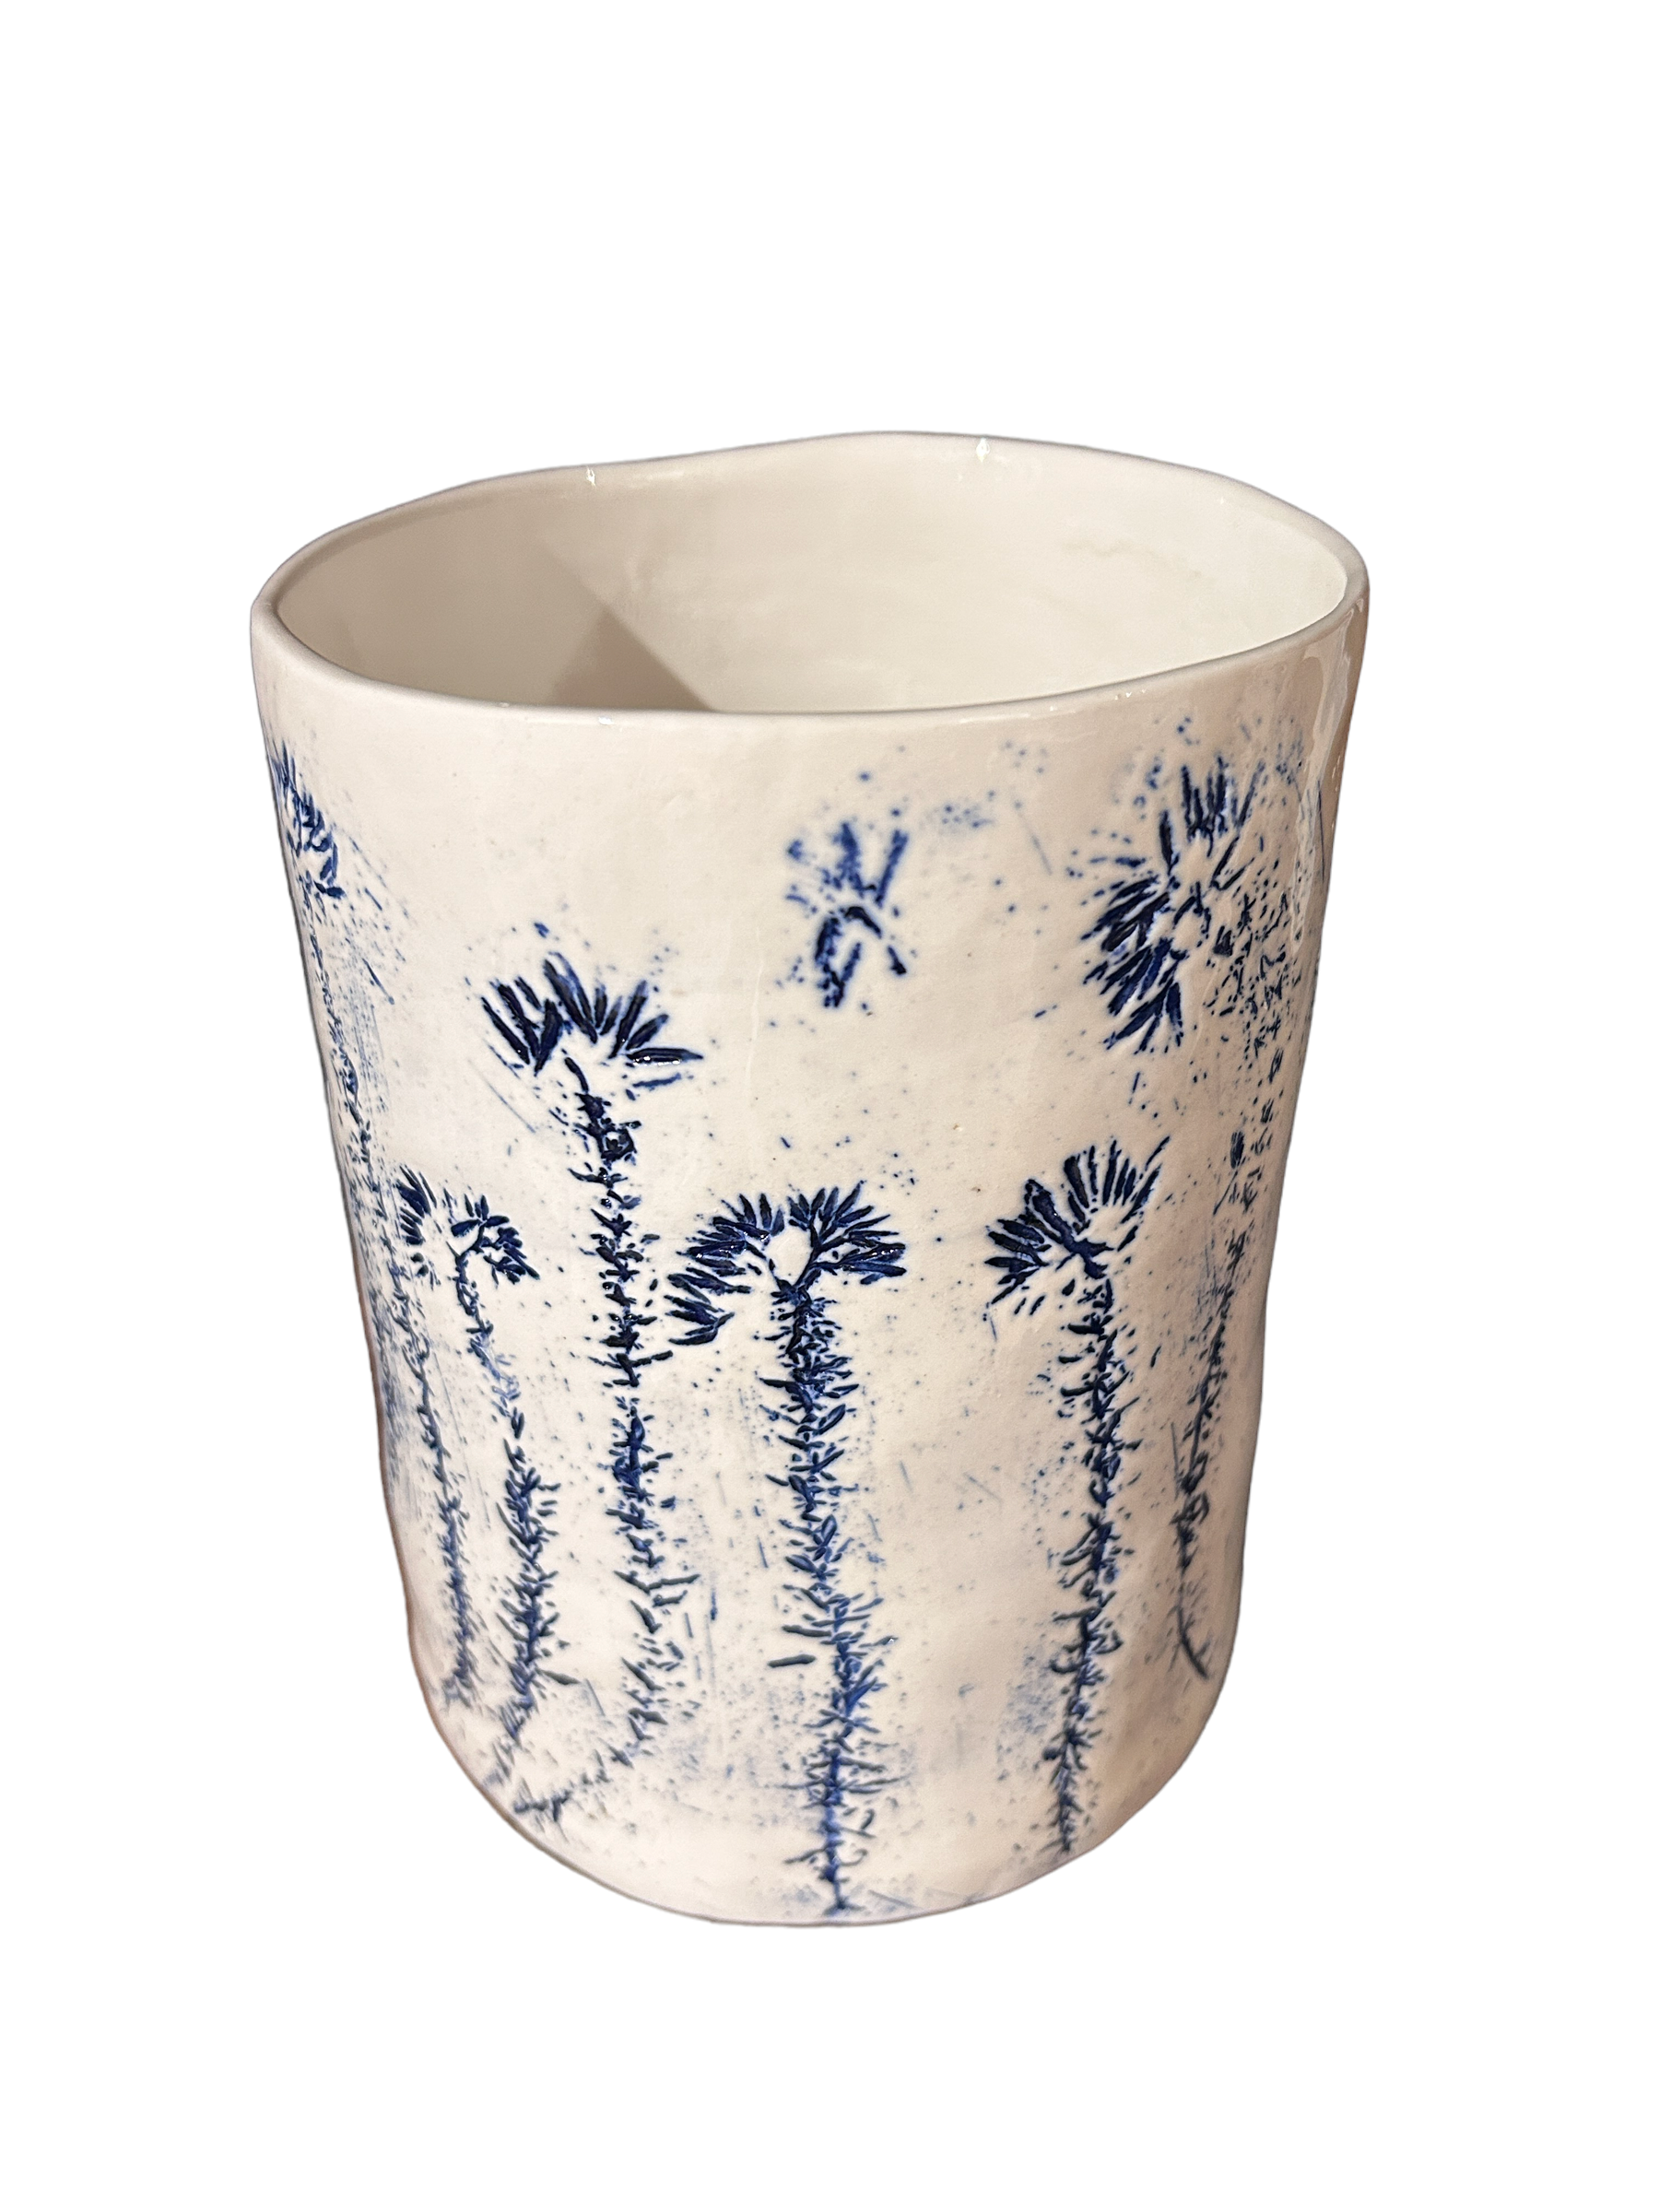 Cobal Blue Fynbos vase